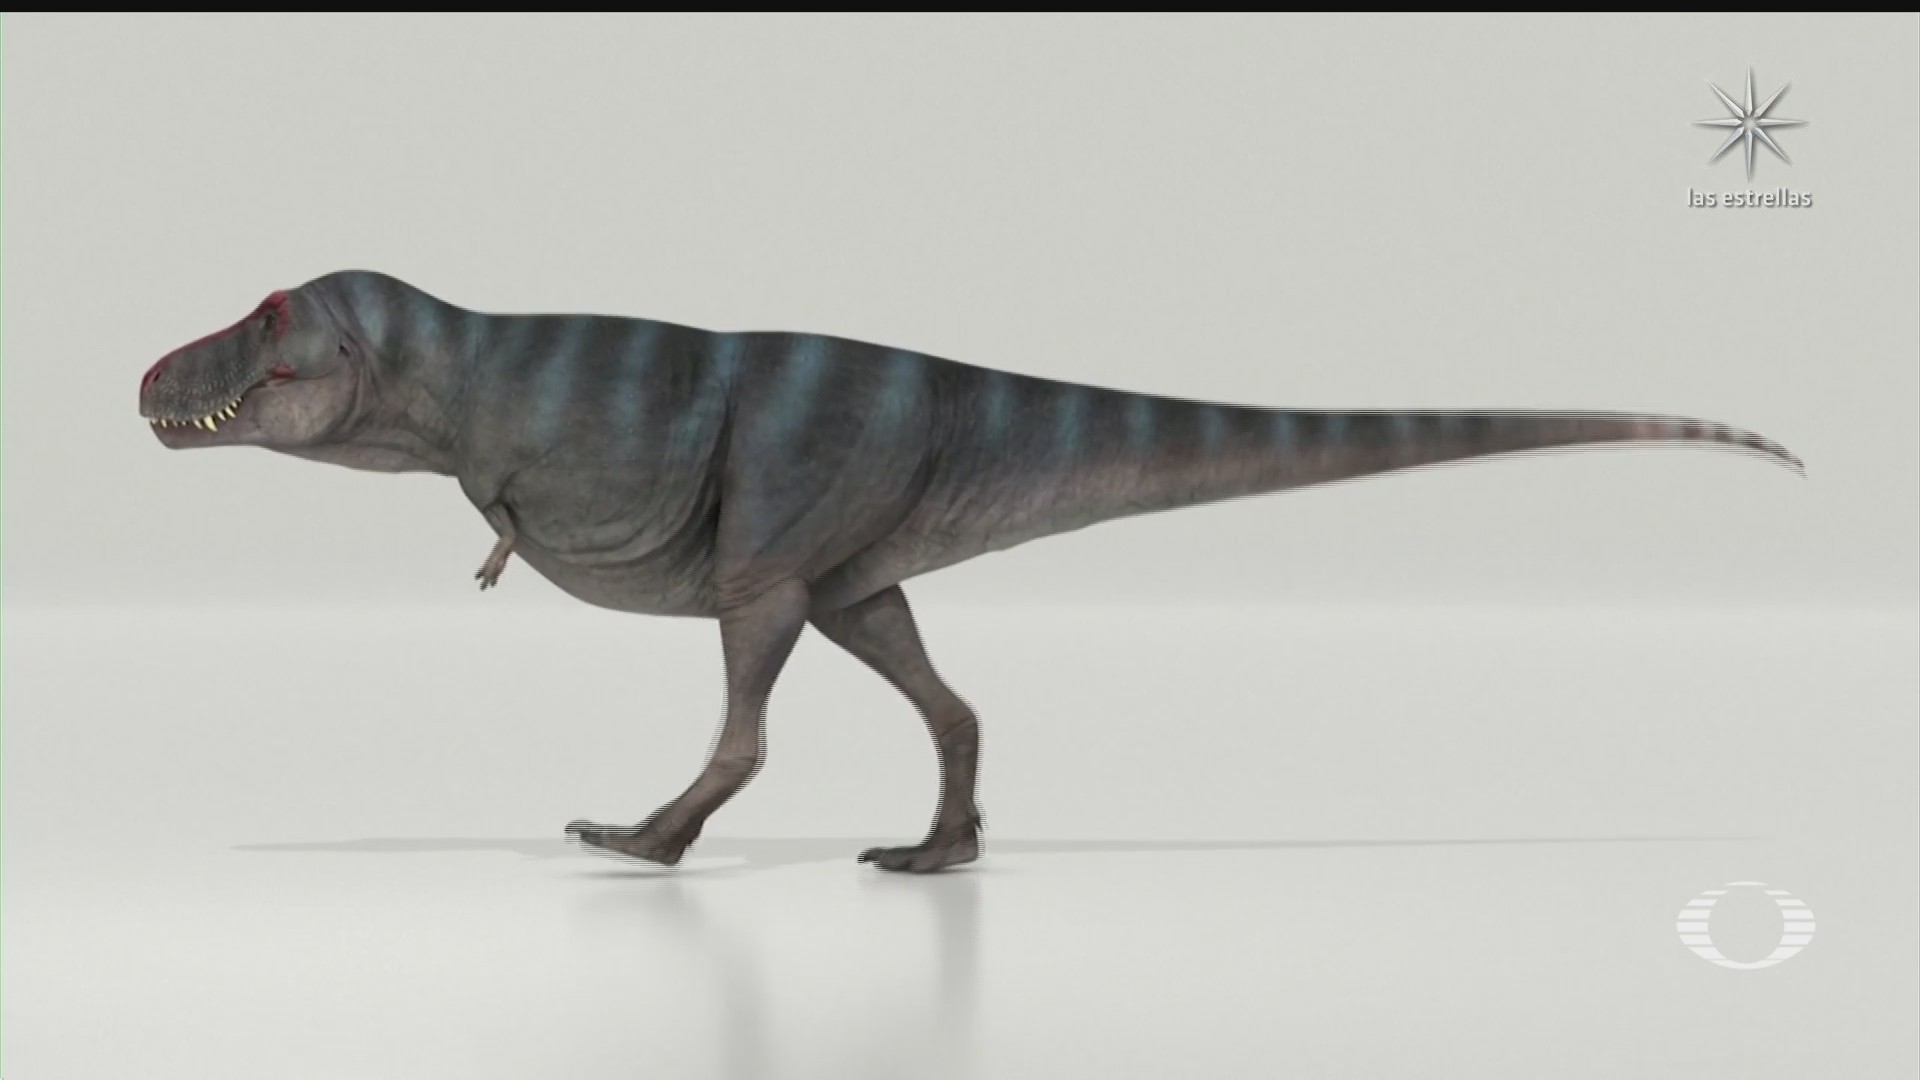 el tiranosaurio rex caminaba a una velocidad similar a la de los humanos